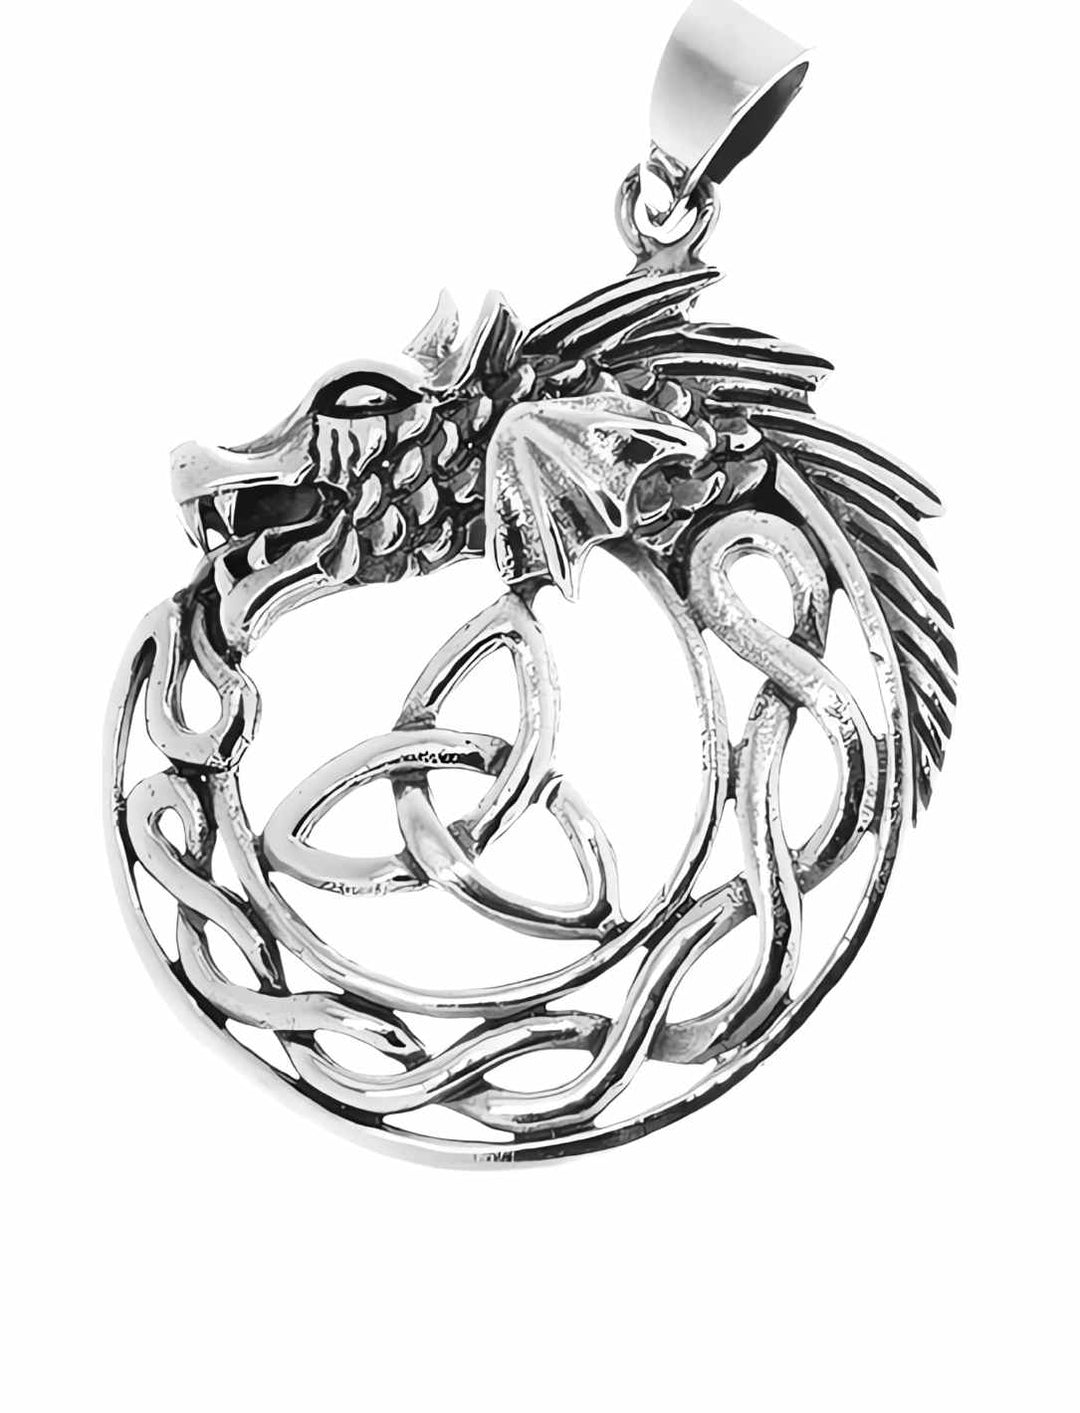 Keltischer Drache der Sidhe Anhänger auf weißem Hintergrund – Ein glänzendes Symbol aus 925 Sterling Silber, das die Essenz der keltischen Legenden und der mystischen Sidhe einfängt.